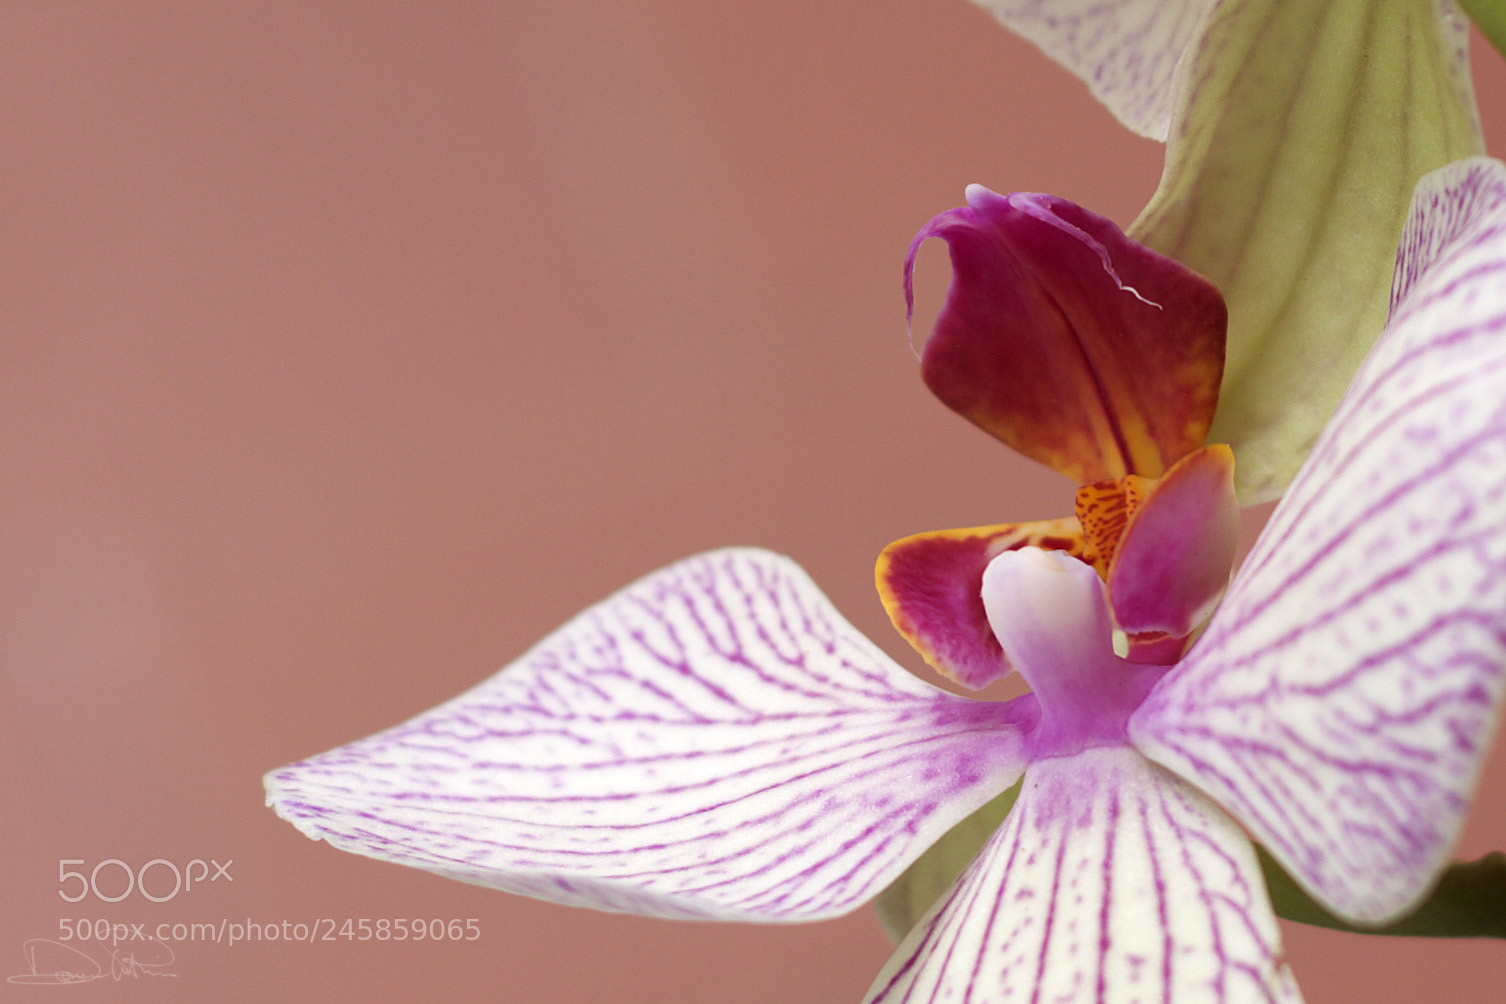 Canon EOS 40D sample photo. Orchidea photography